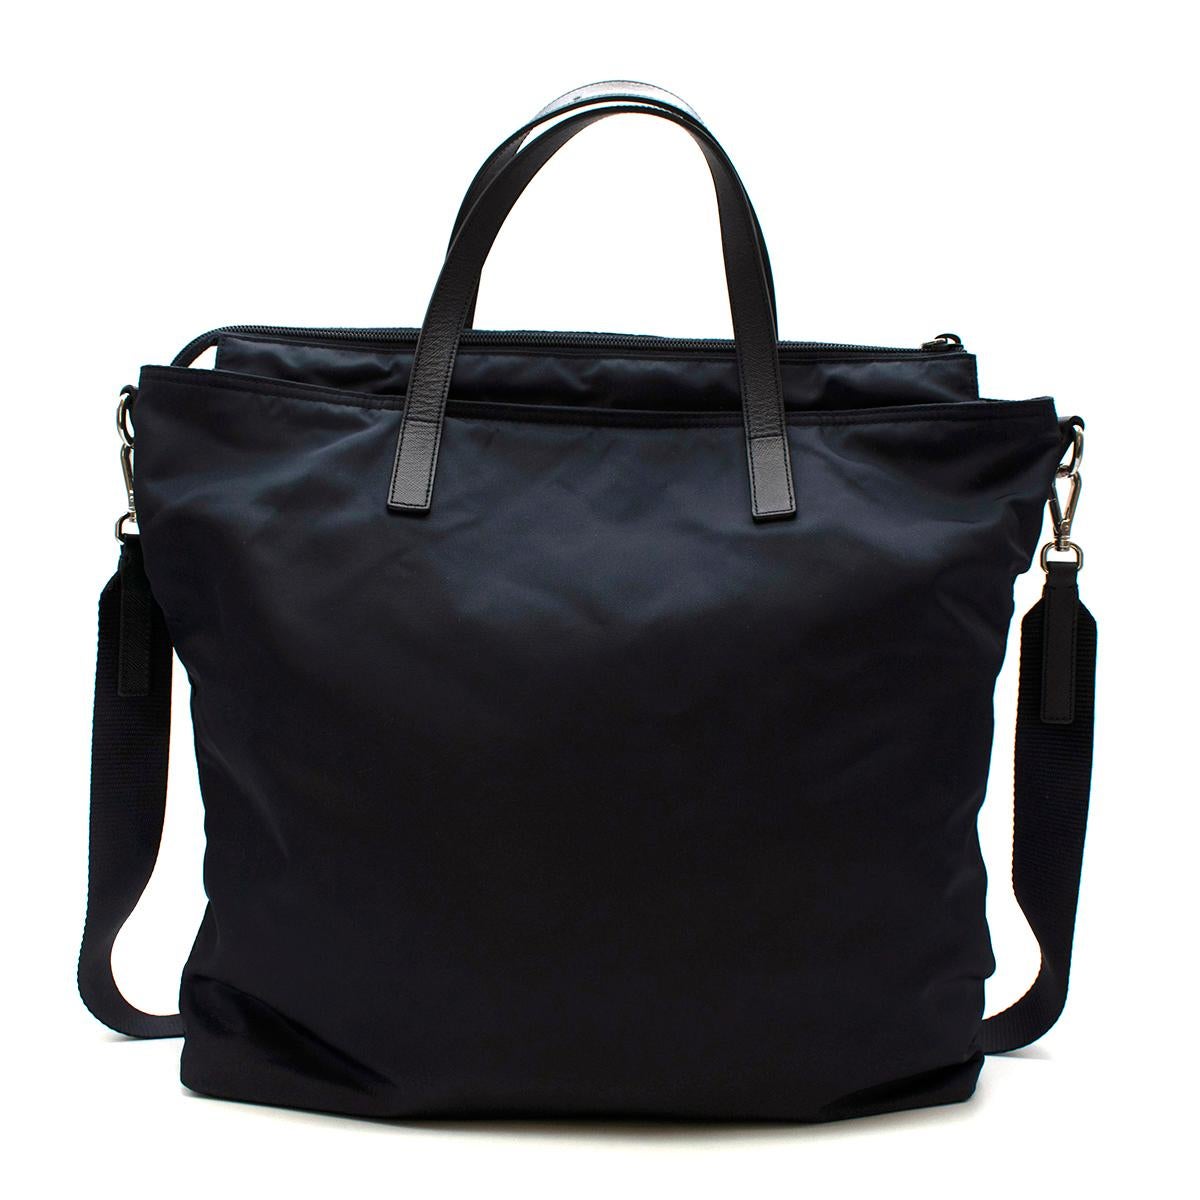 navy nylon handbag bag